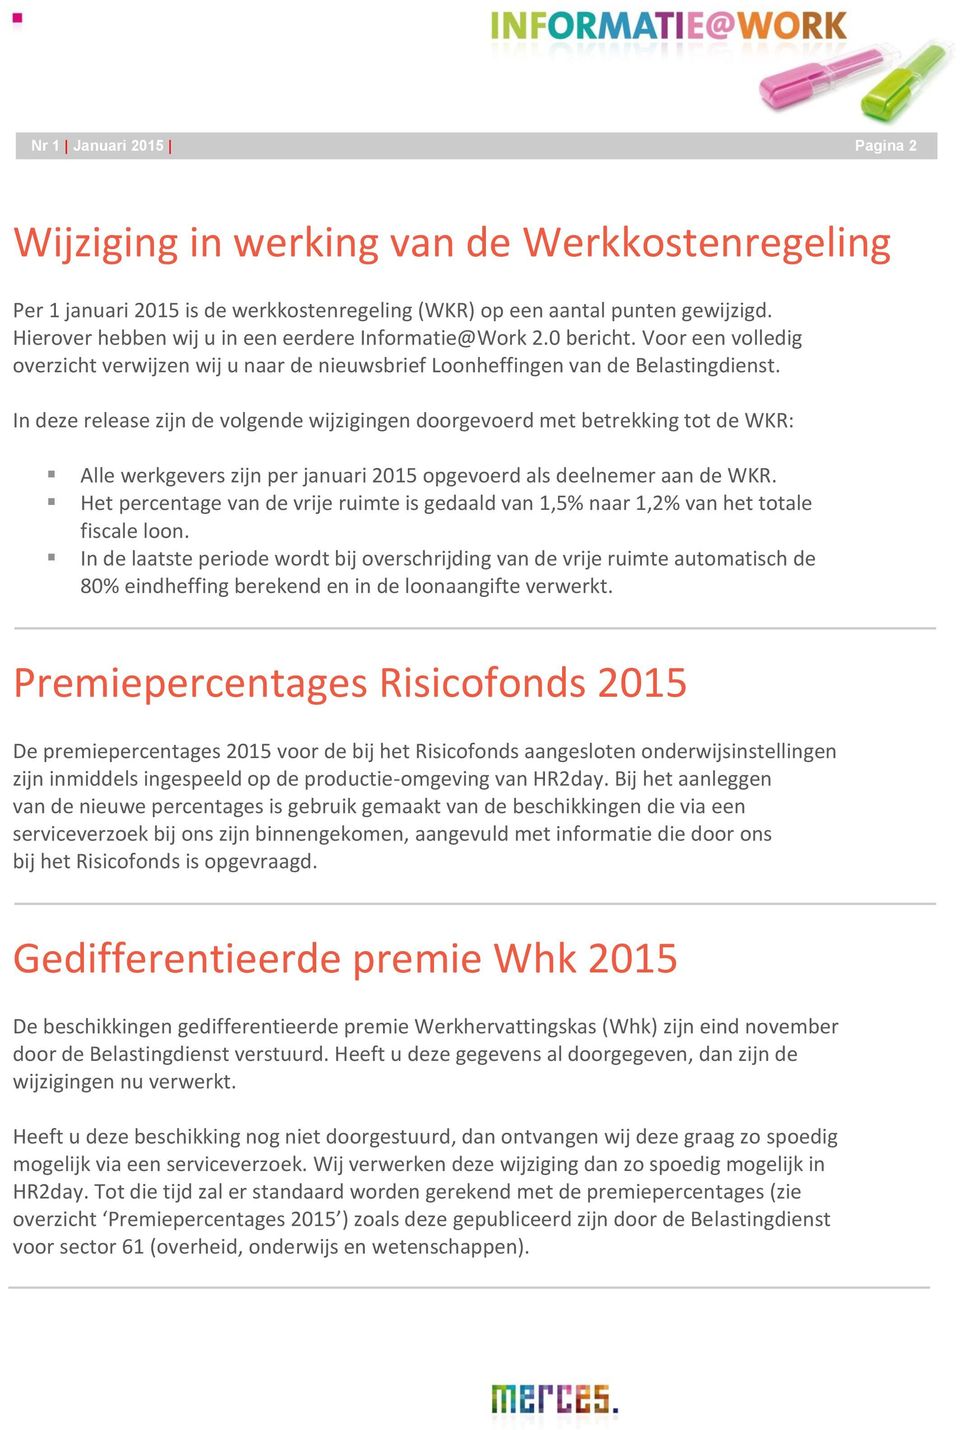 In deze release zijn de volgende wijzigingen doorgevoerd met betrekking tot de WKR: Alle werkgevers zijn per januari 2015 opgevoerd als deelnemer aan de WKR.